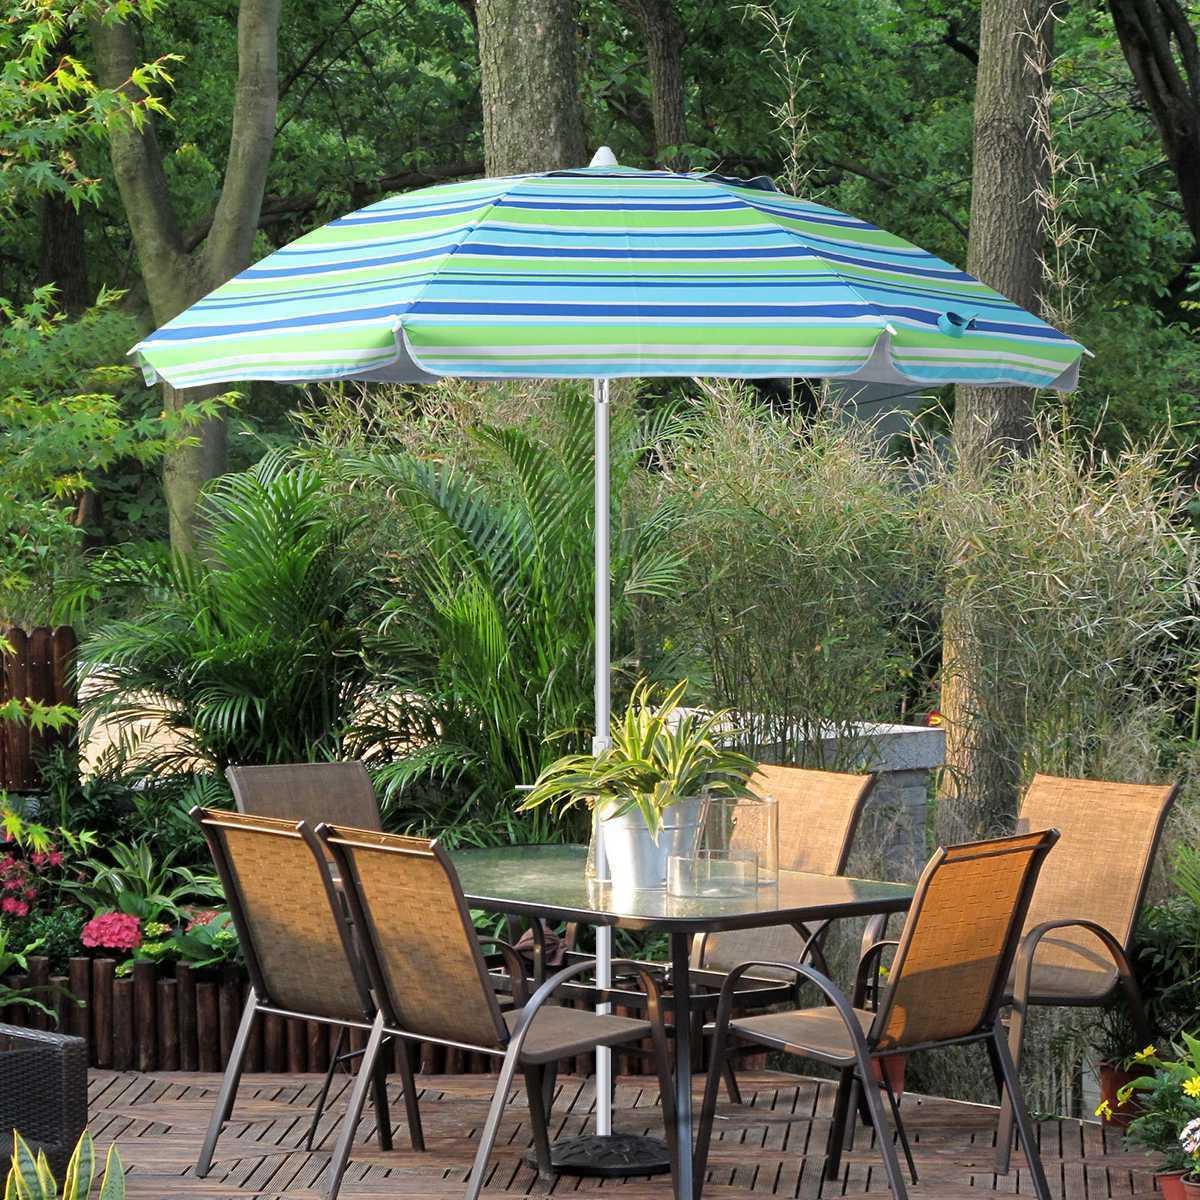 The main use of anti-UV umbrellas for outdoor courtyard garden